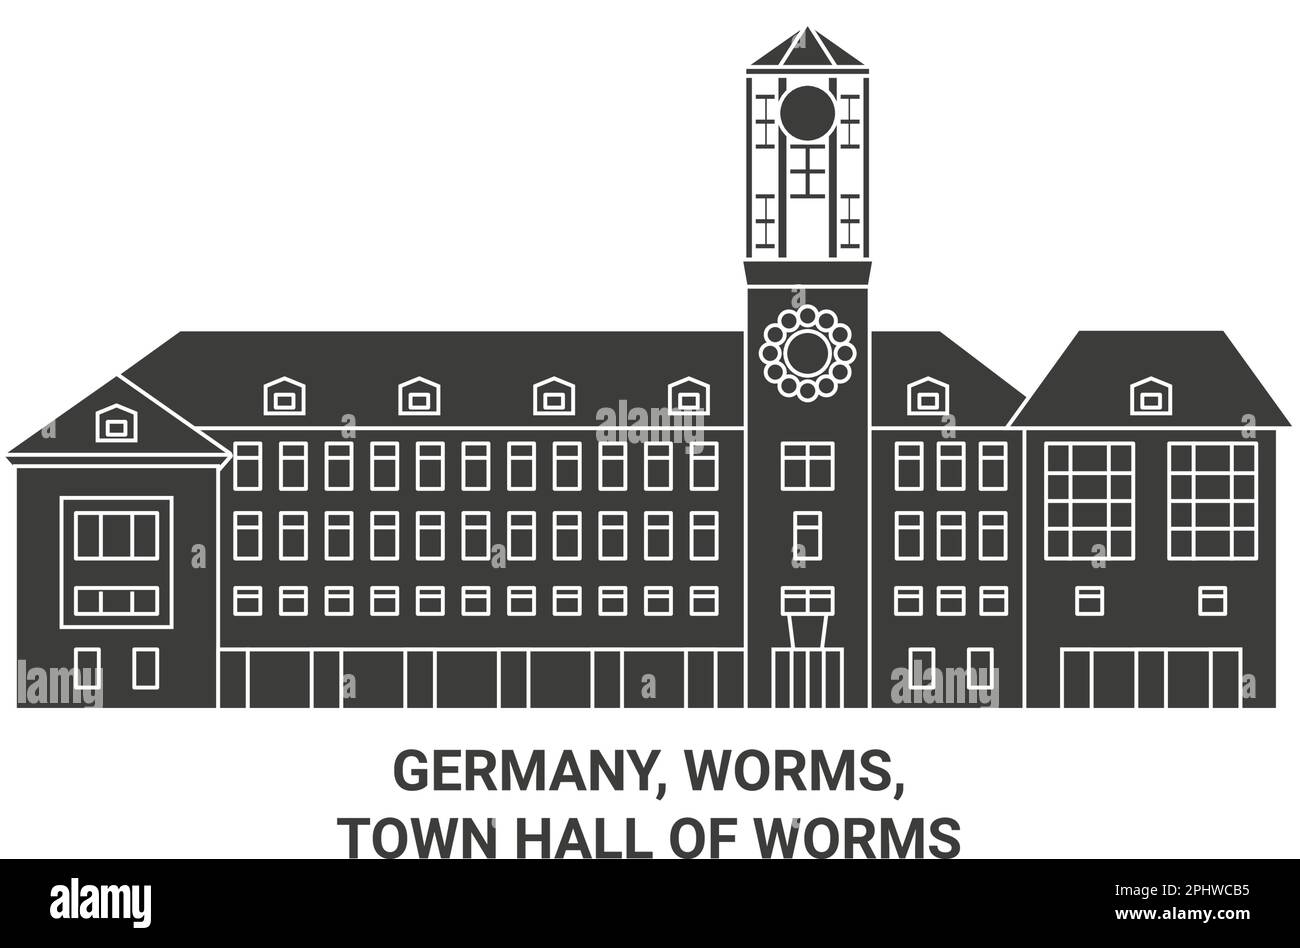 Deutschland, Würmer, Rathaus der Würmer reisen als Vektorgrafik Stock Vektor